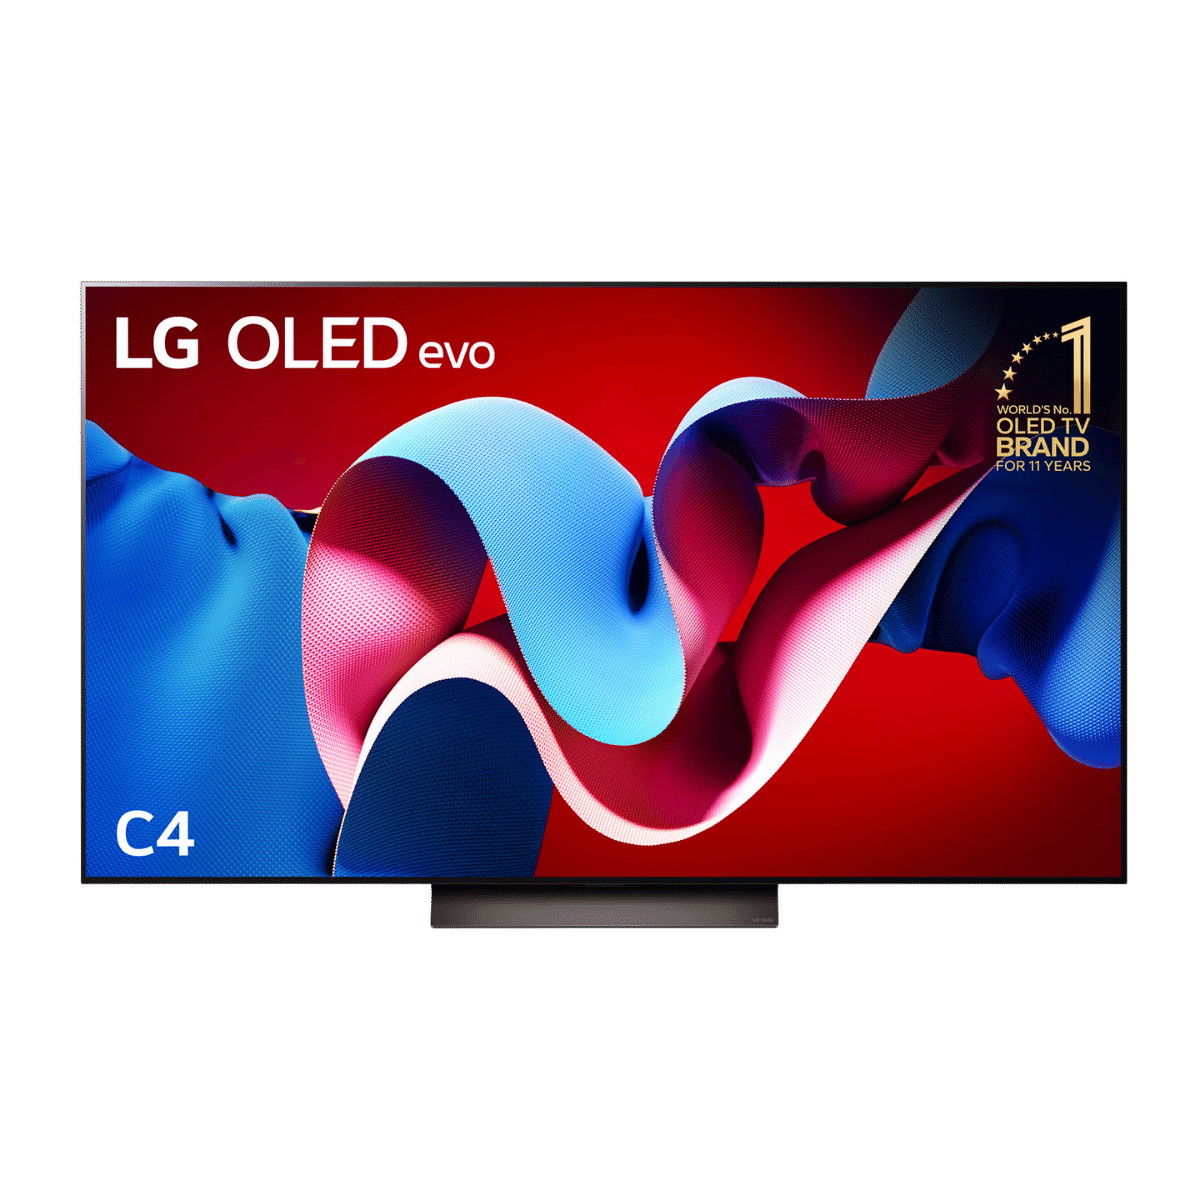 LG 77 Inch C4 OLED evo TV